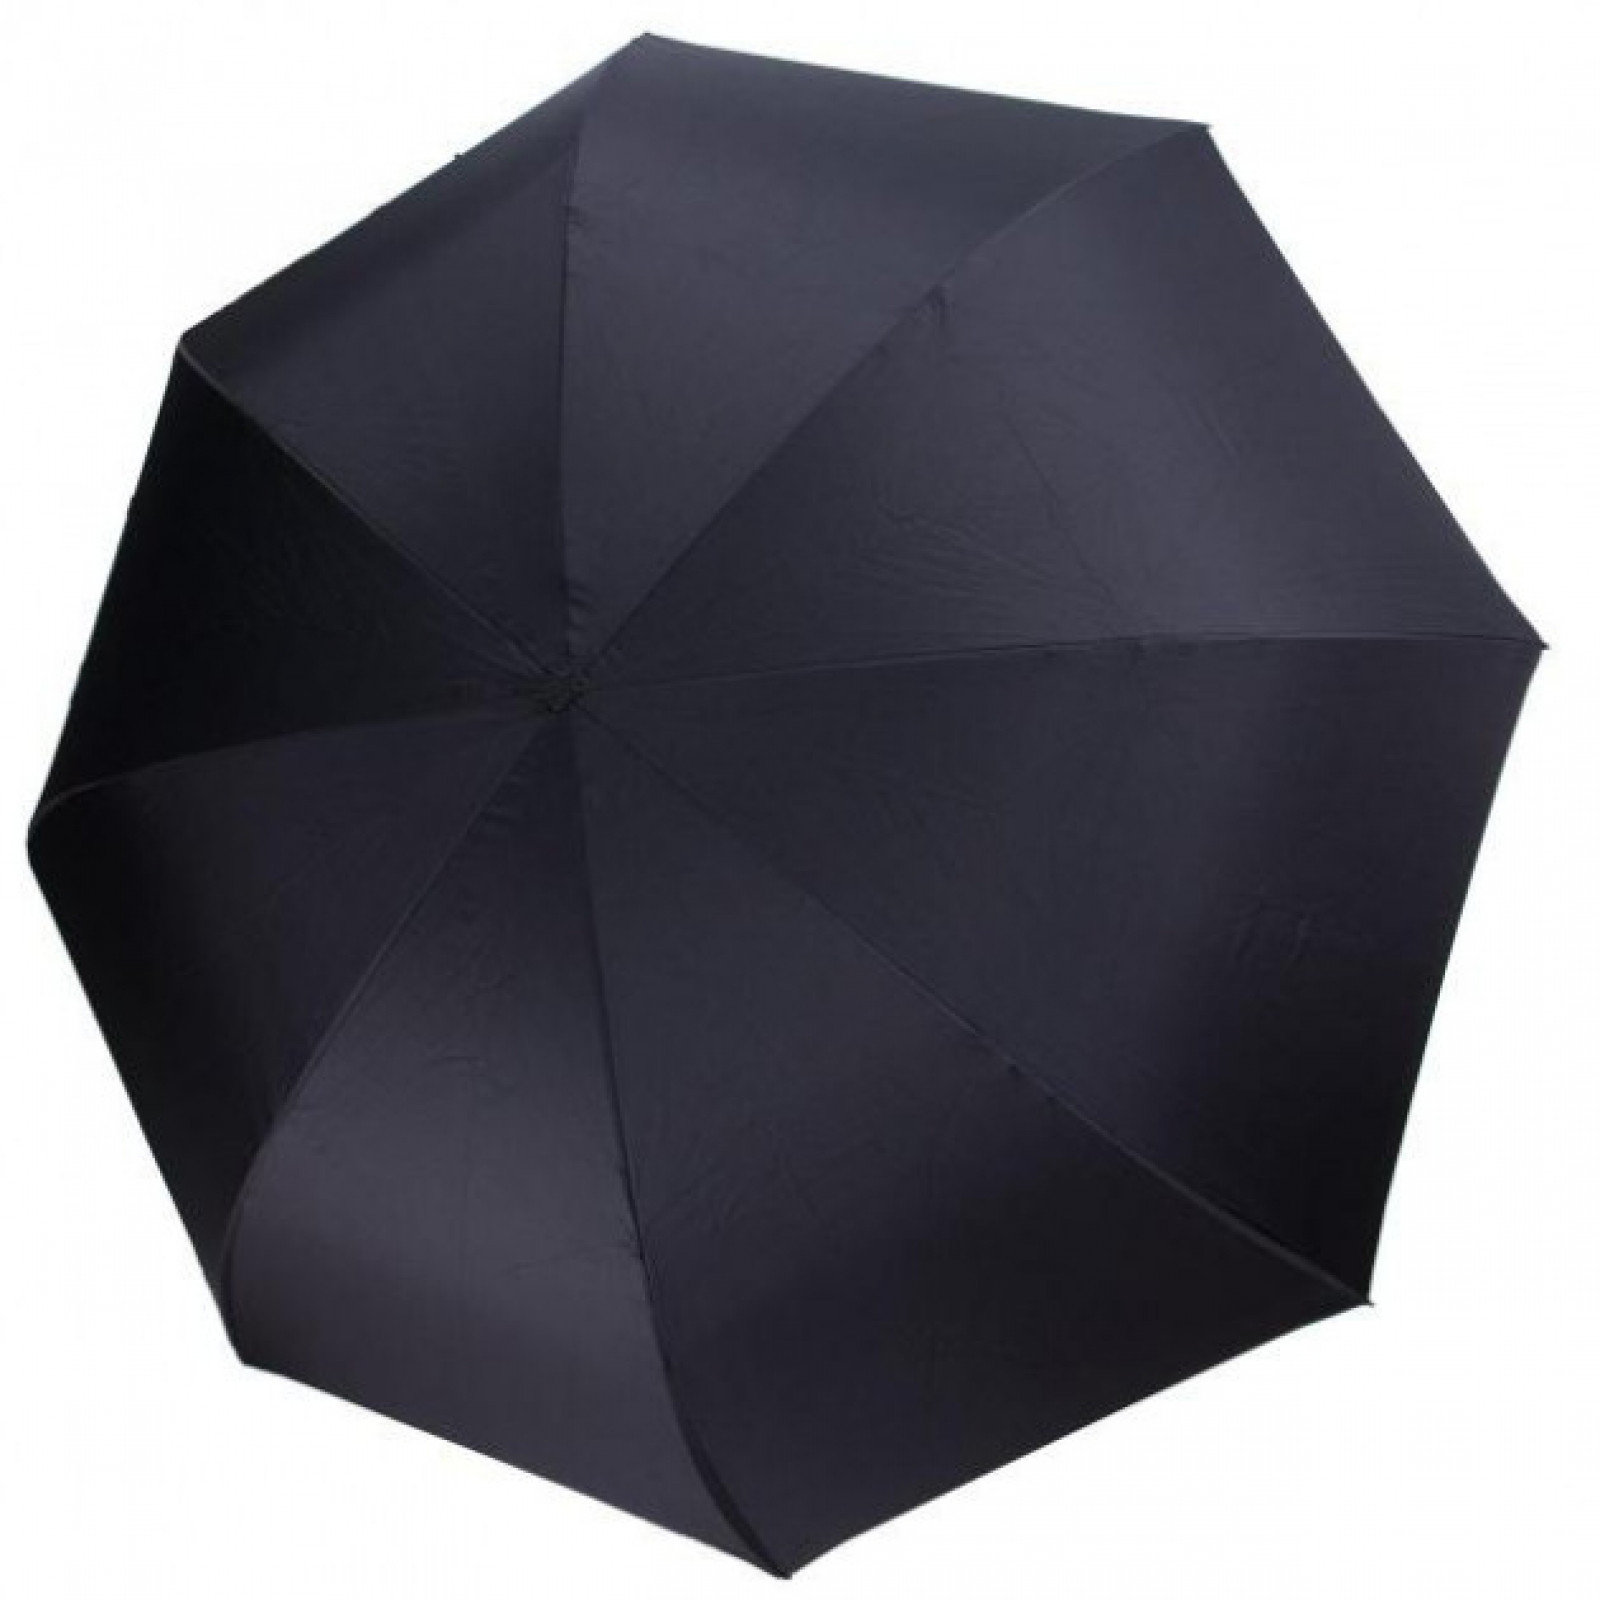 Зонт обратного сложения, антизонт, умный зонт, зонт наоборот Up Brella Узор-Бежевый 154052